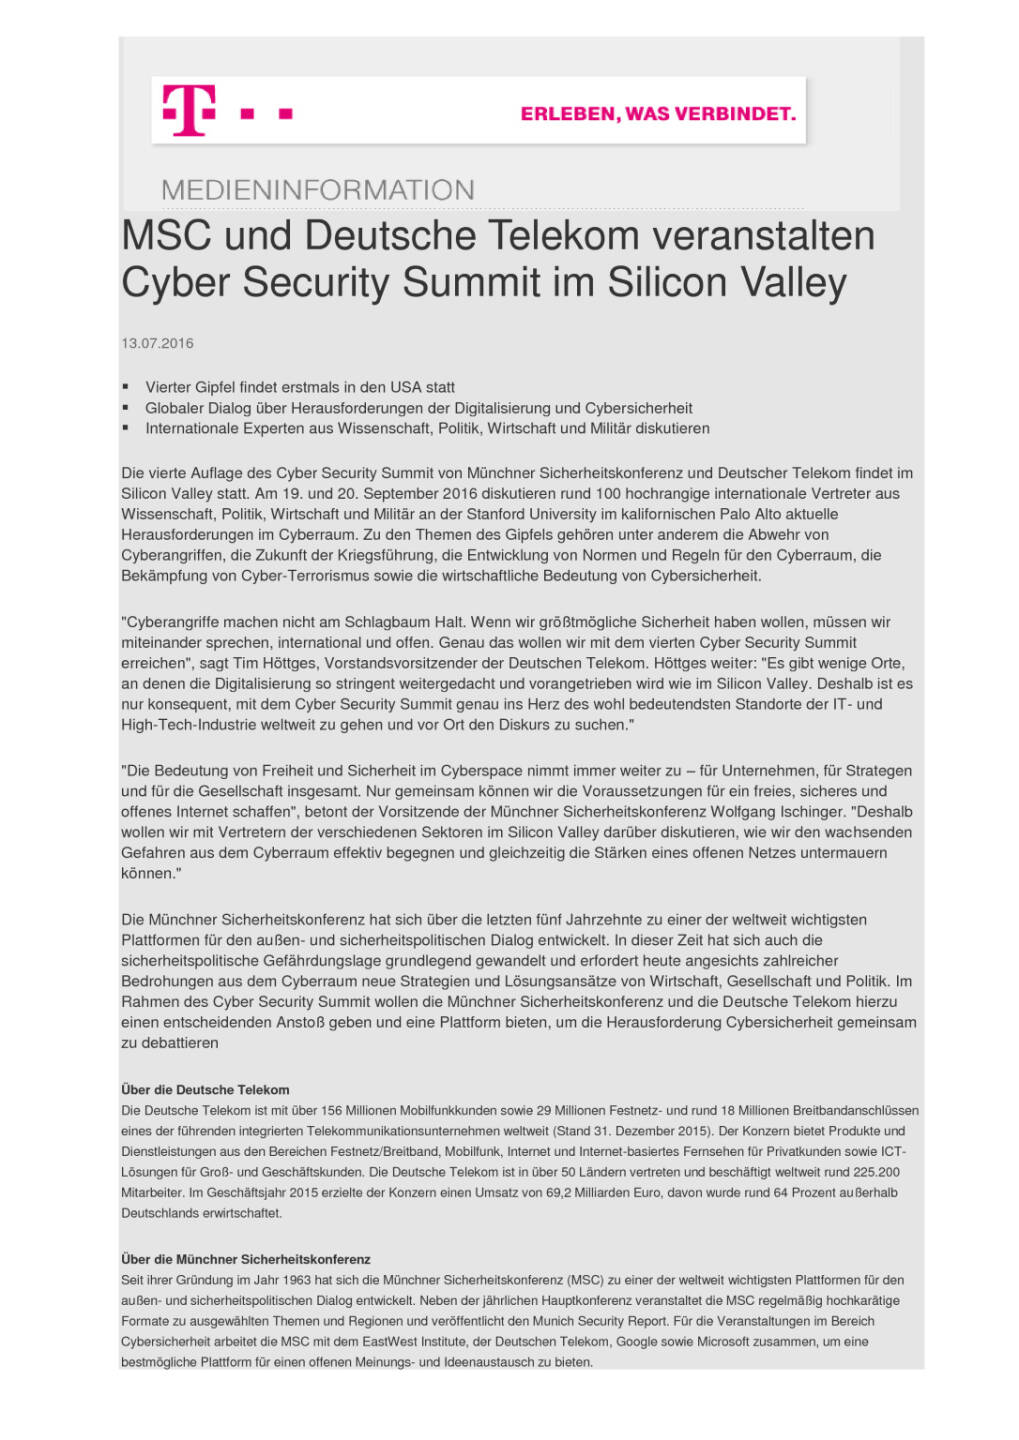 Deutsche Telekom und MSC veranstalten Cyber Security Summit im Silicon Valley, Seite 1/1, komplettes Dokument unter http://boerse-social.com/static/uploads/file_1398_deutsche_telekom_und_msc_veranstalten_cyber_security_summit_im_silicon_valley.pdf